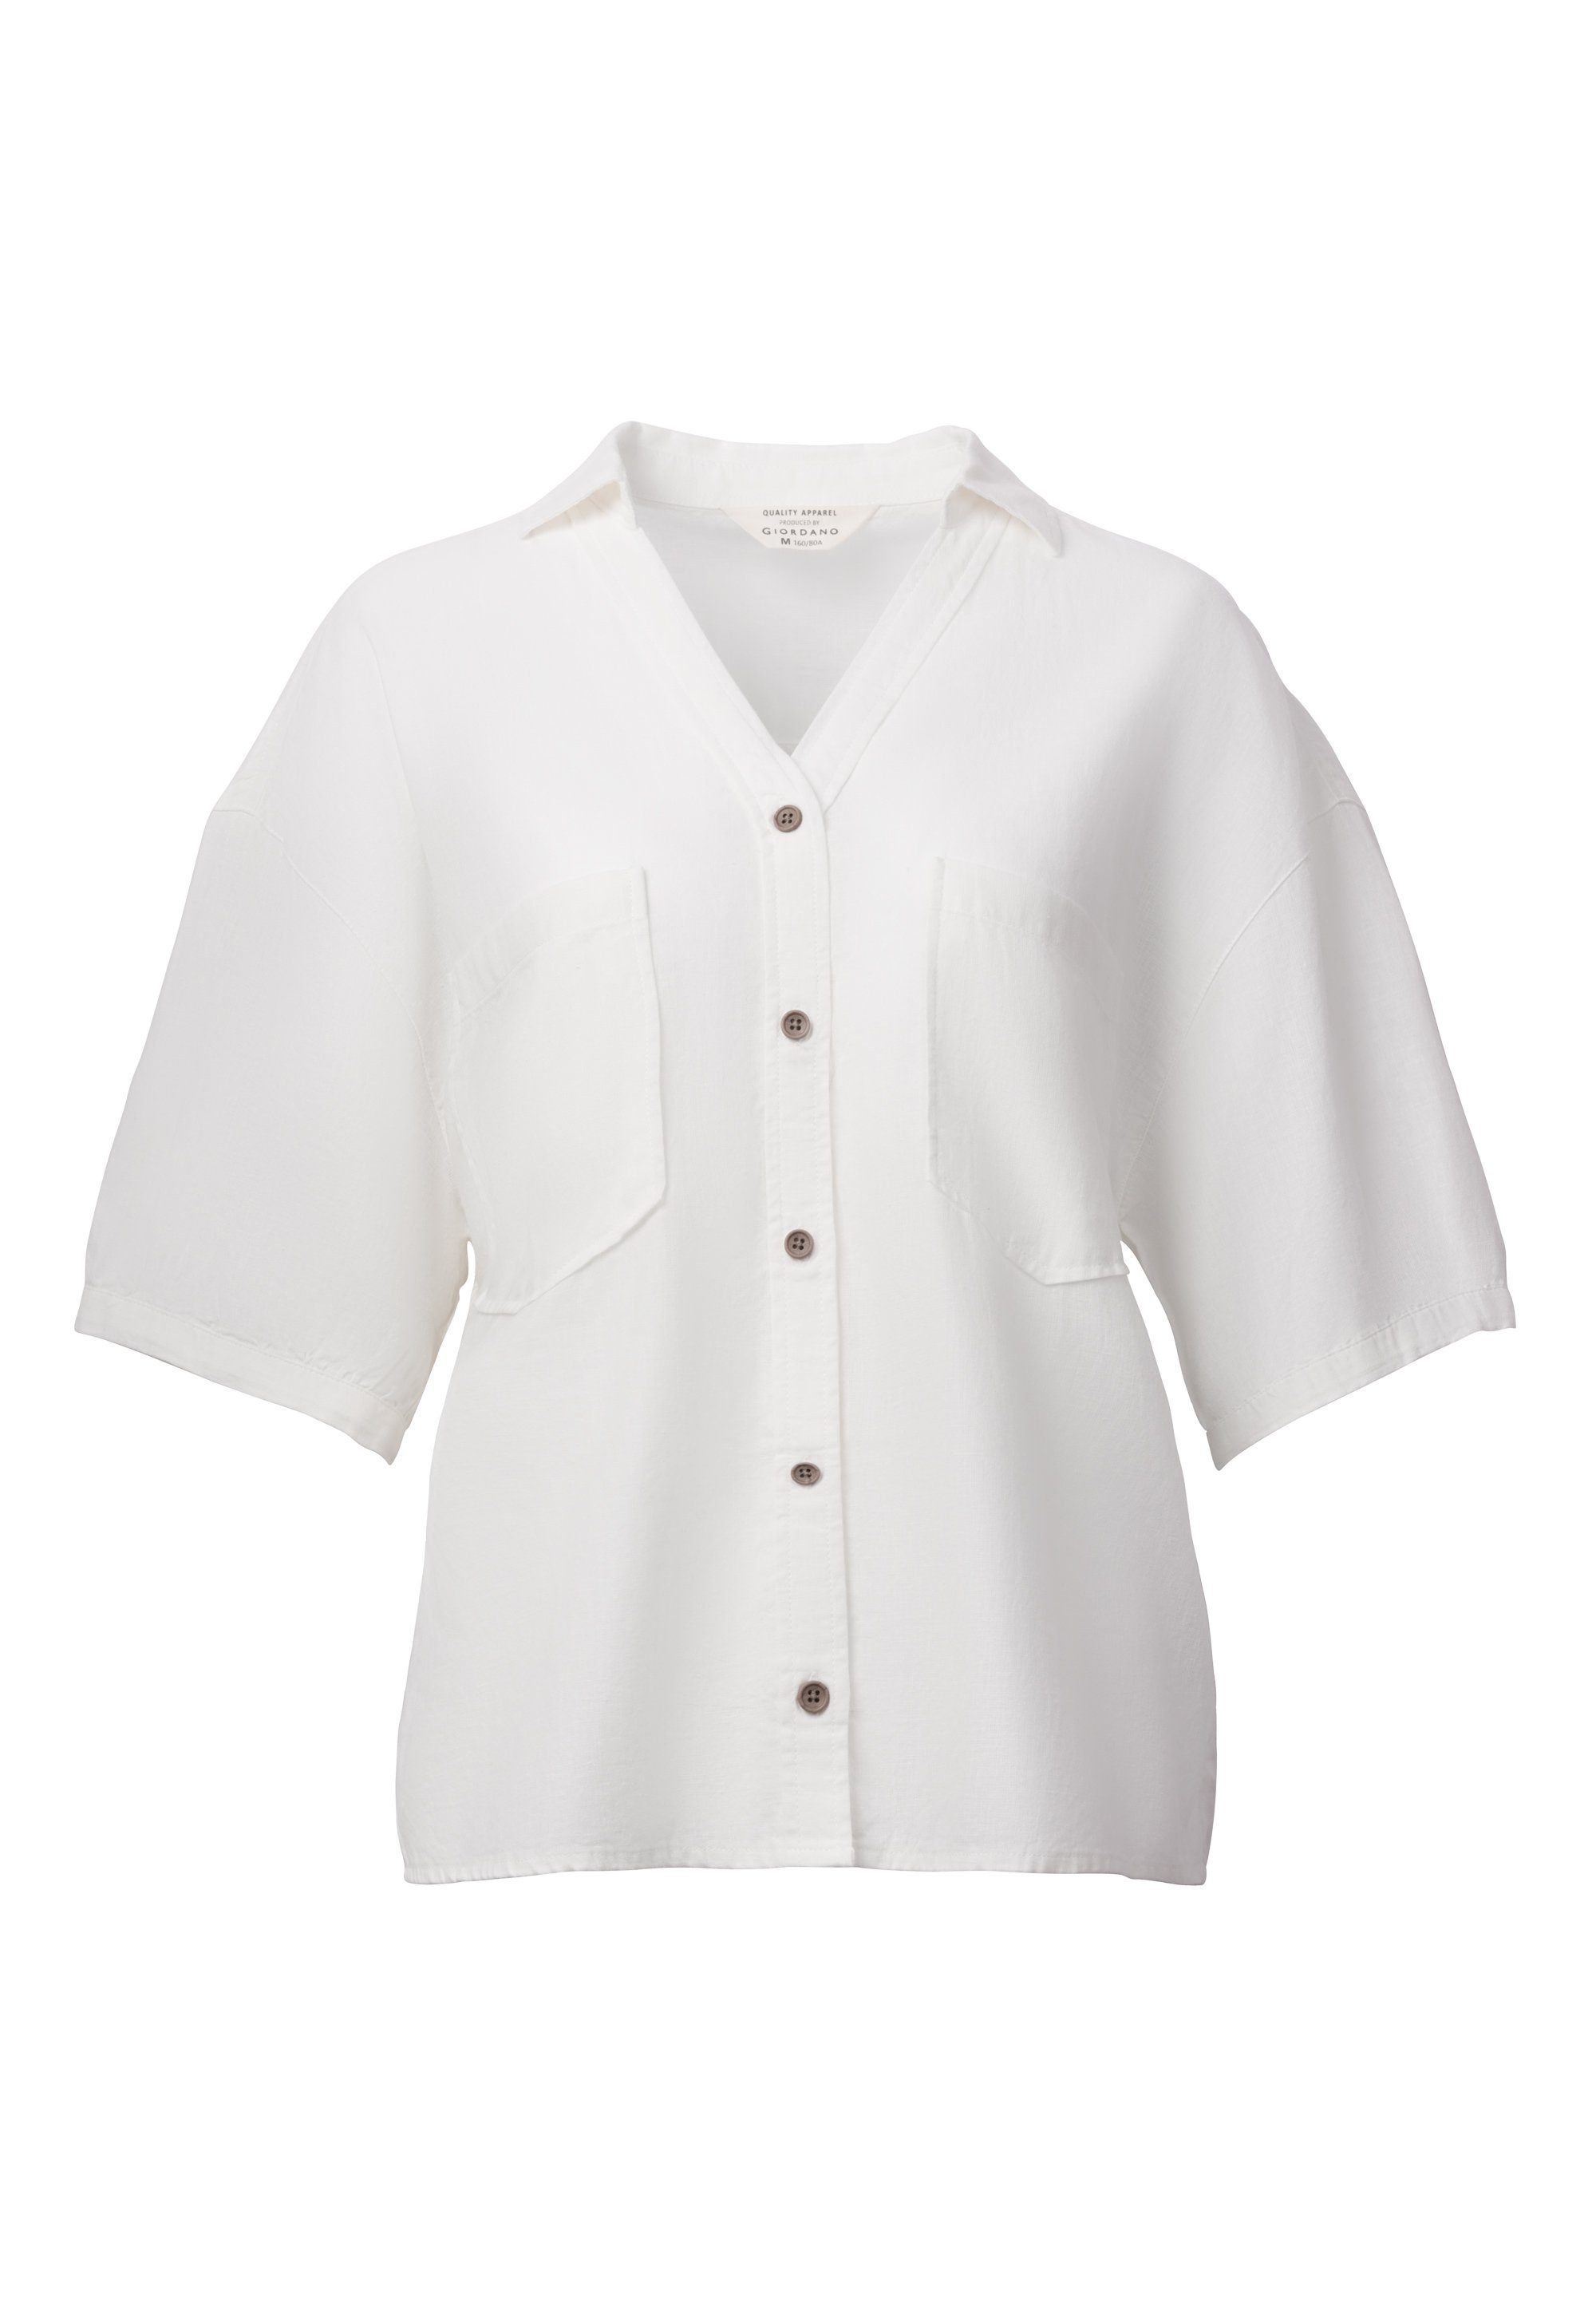 GIORDANO Klassische Bluse weiß schicken mit Puffärmeln